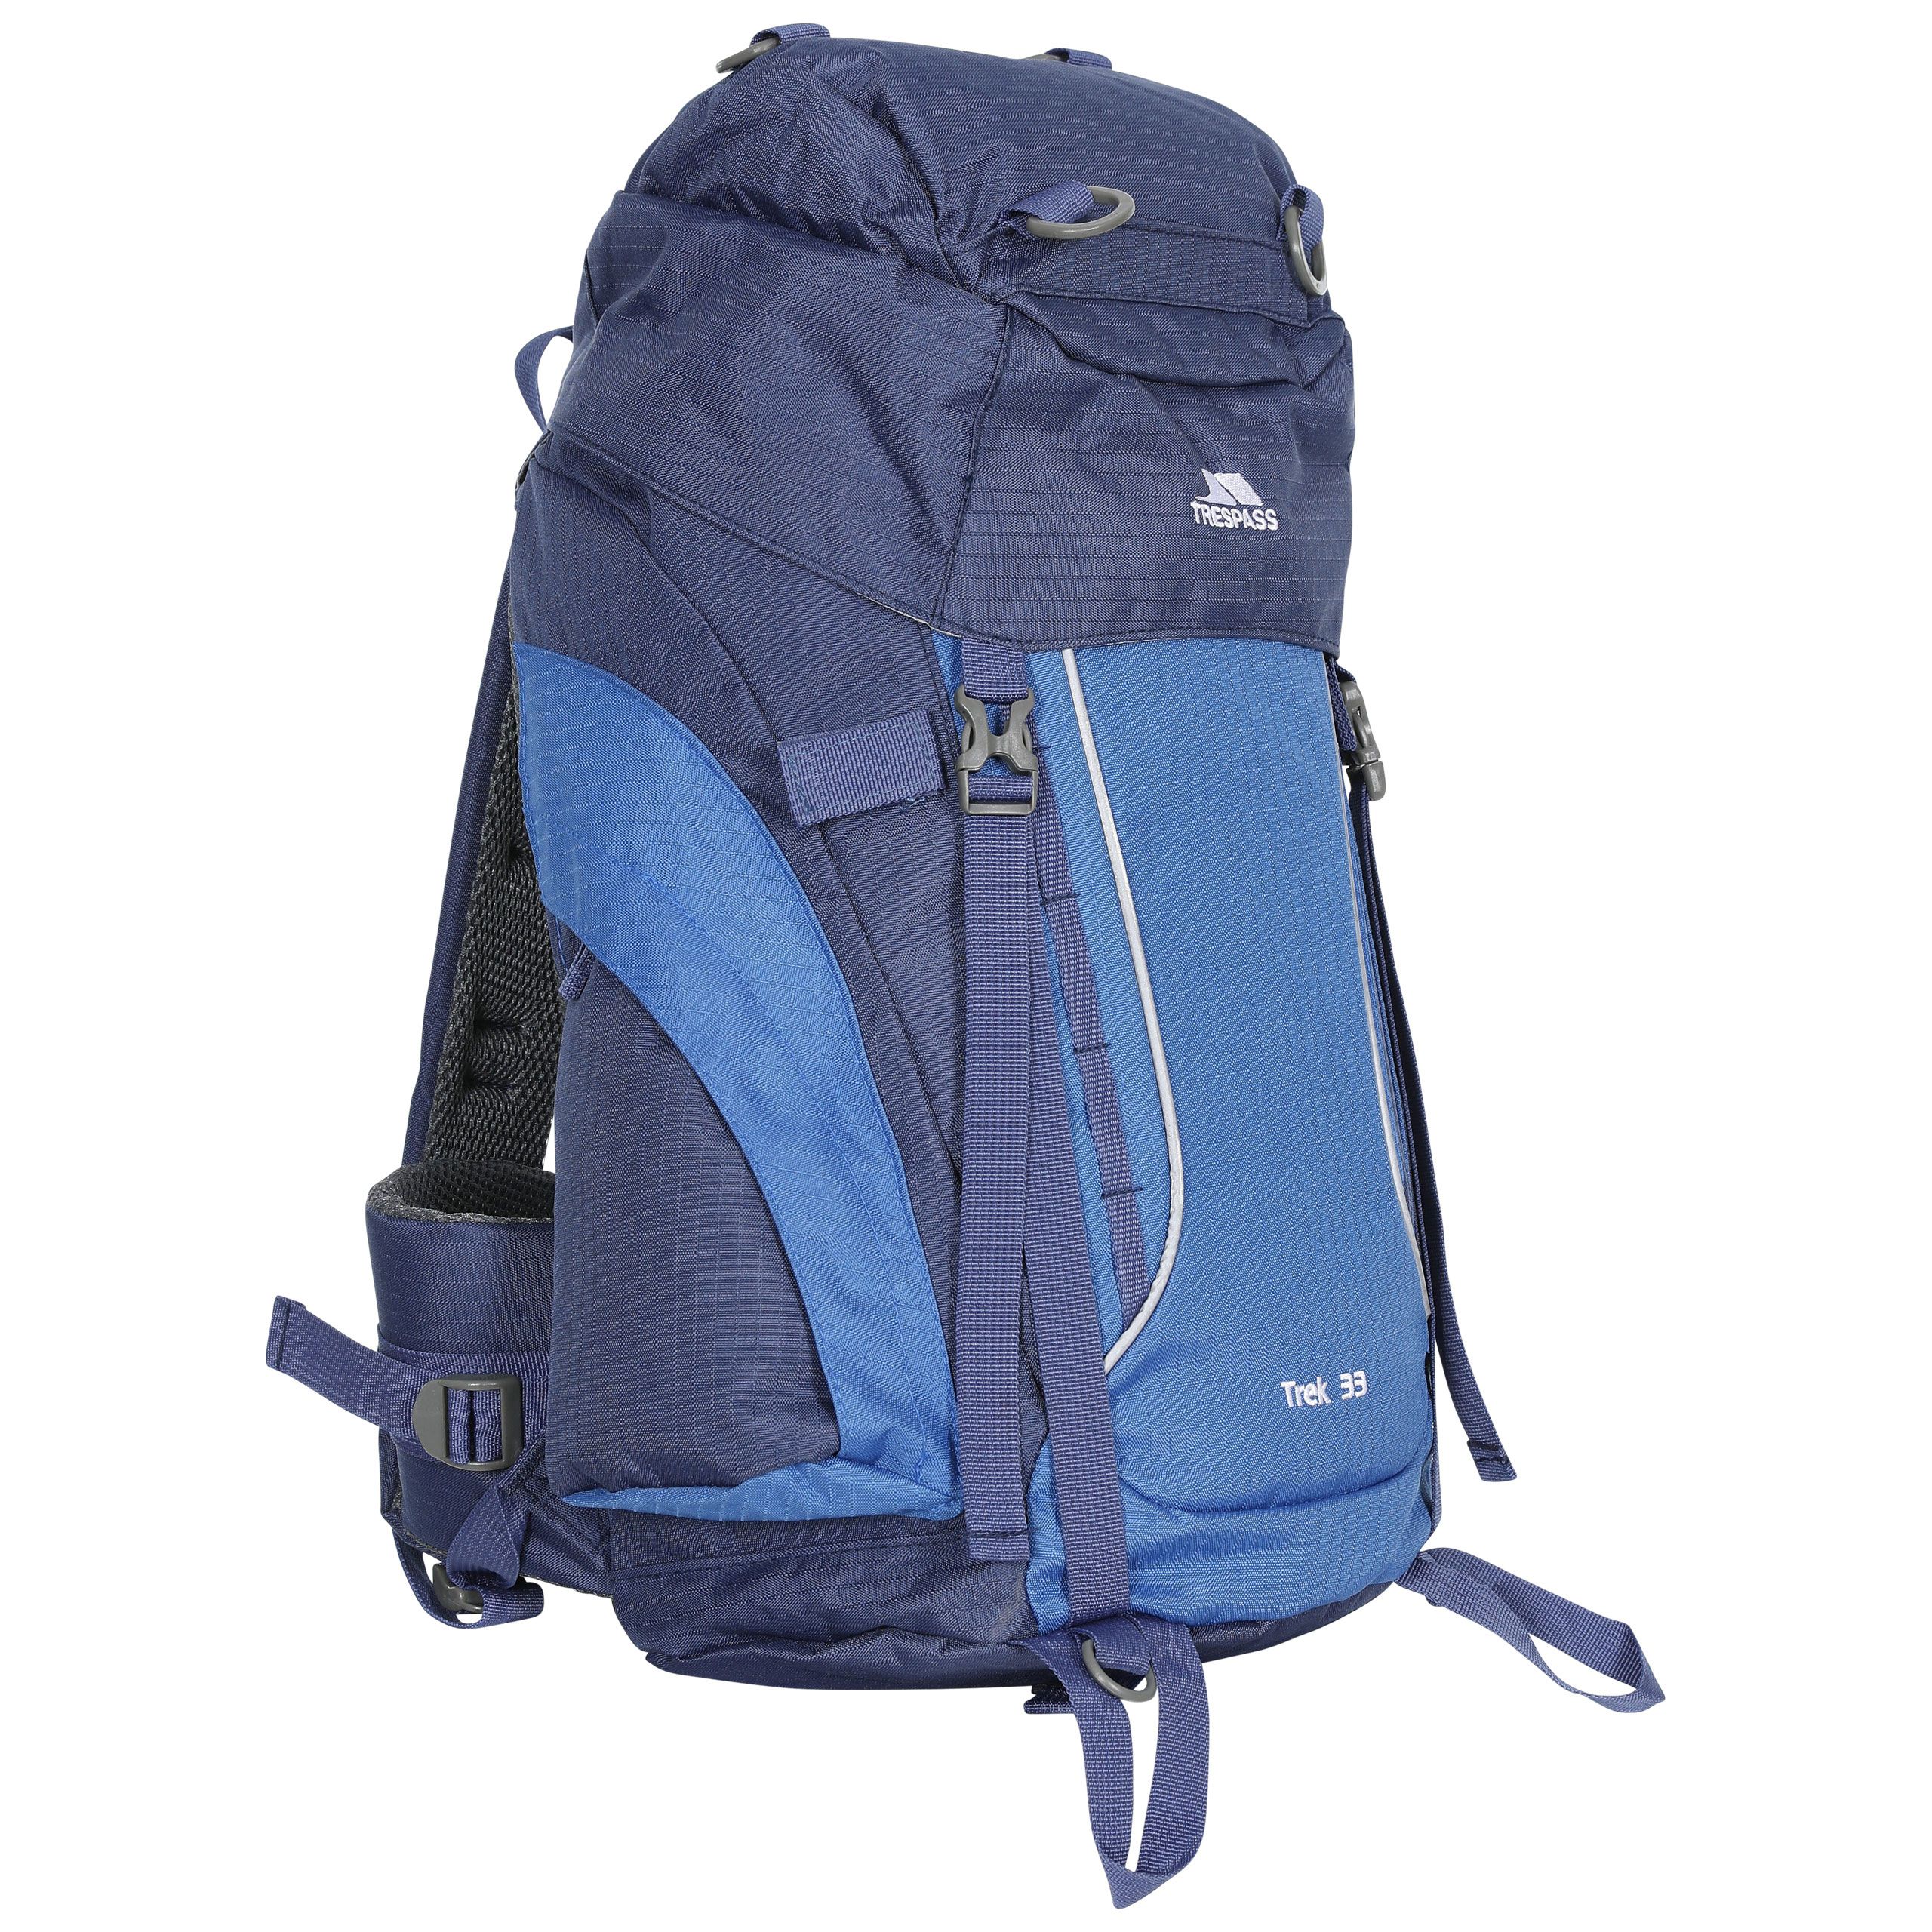 Mochila De Acampada / Hiking Modelo 33 (33 Litros) Acampada / Camping Trespass Trek (azul Eléctrico)